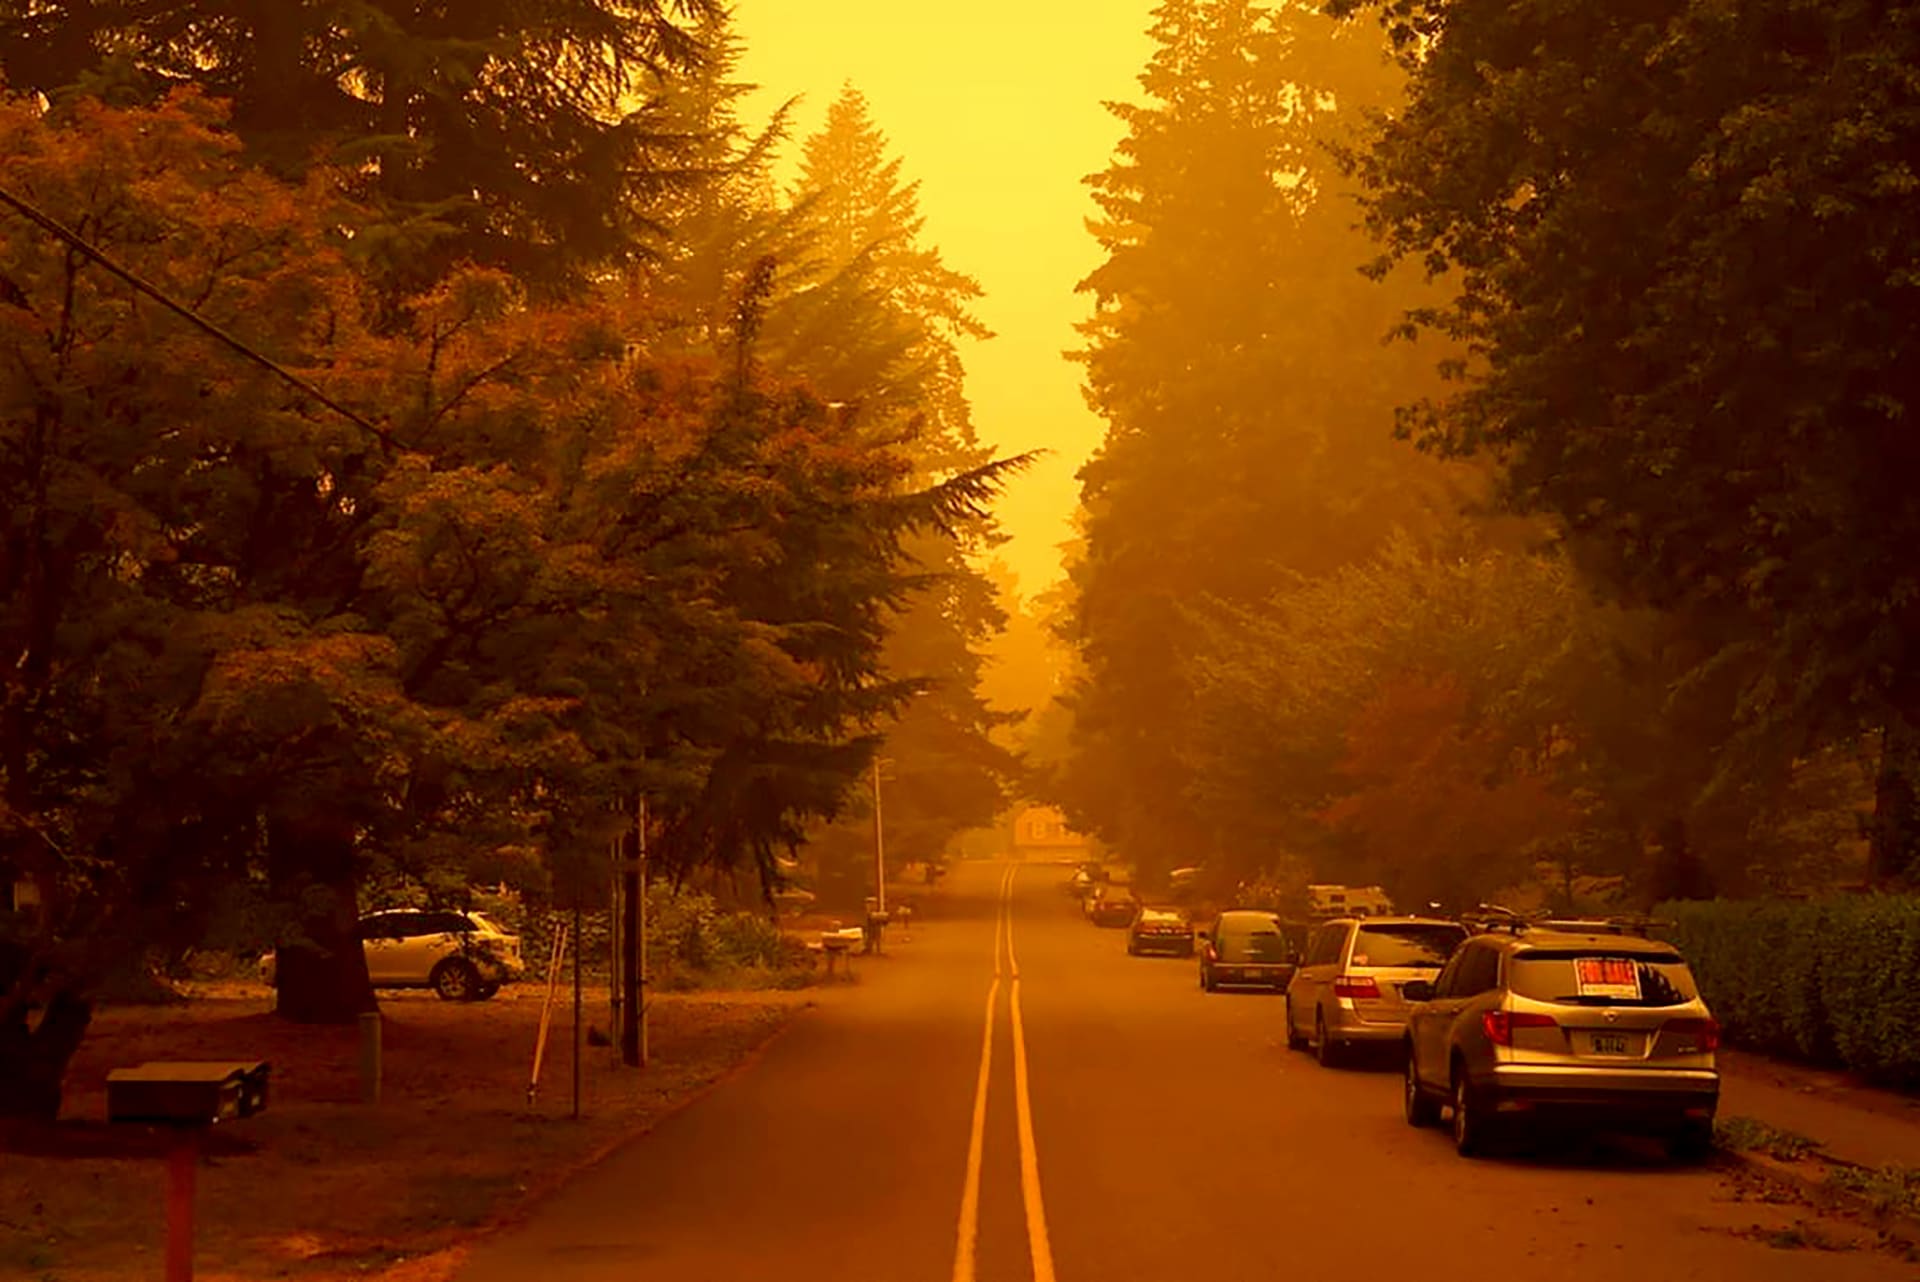 Obyvatelé některých oblastí na americkém západním pobřeží vidí oranžovou a místy až sytě červenou oblohu uprostřed dne. Příčinou zlověstného efektu je kouř z rozsáhlých lesních požárů, které už v Kalifornii, Oregonu a Washingtonu spálily statisíce hektarů.